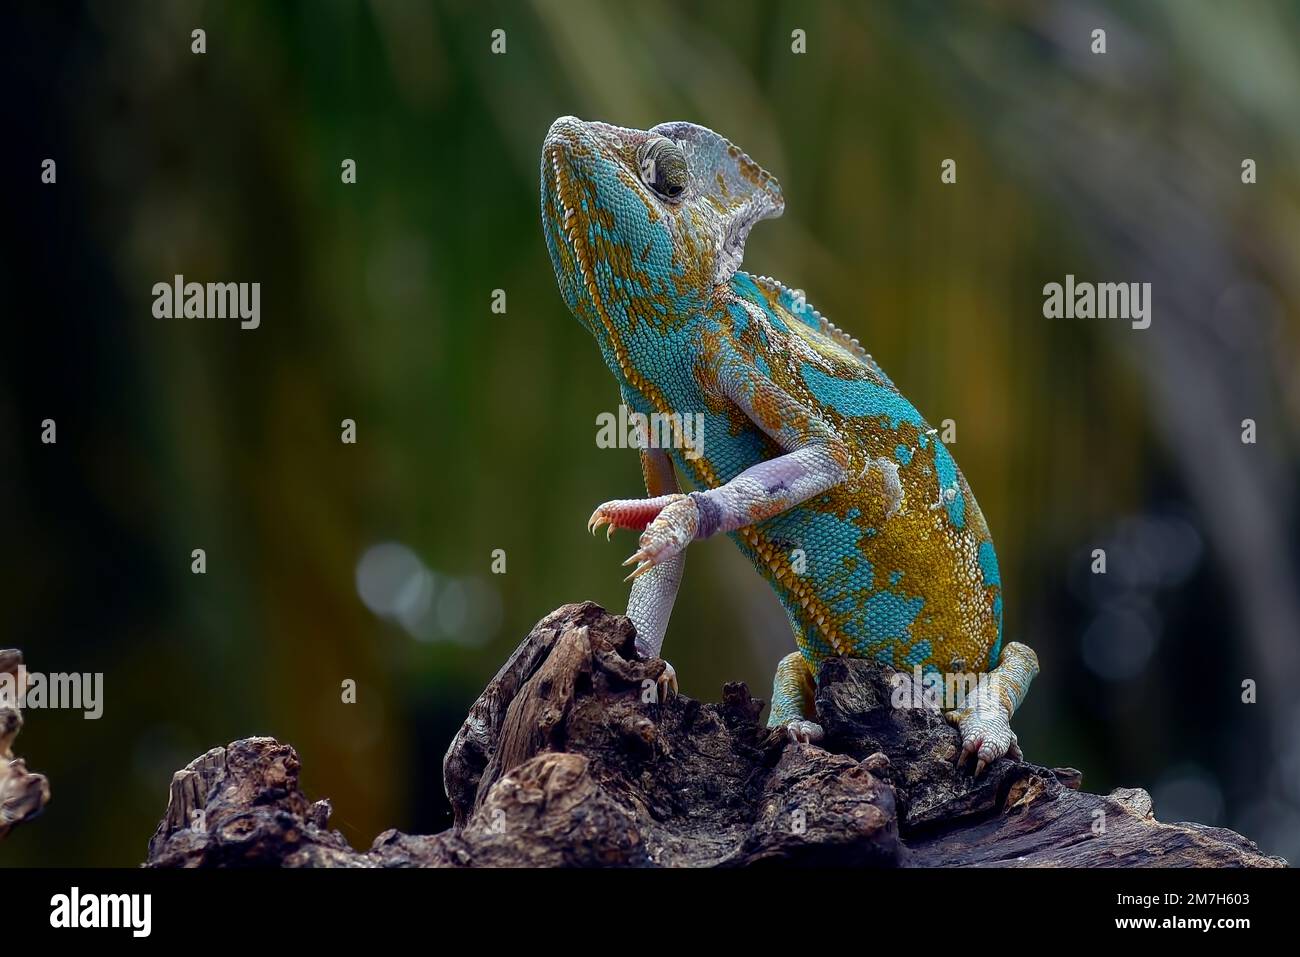 Ambilobe fotografías e imágenes de alta resolución - Página 2 - Alamy